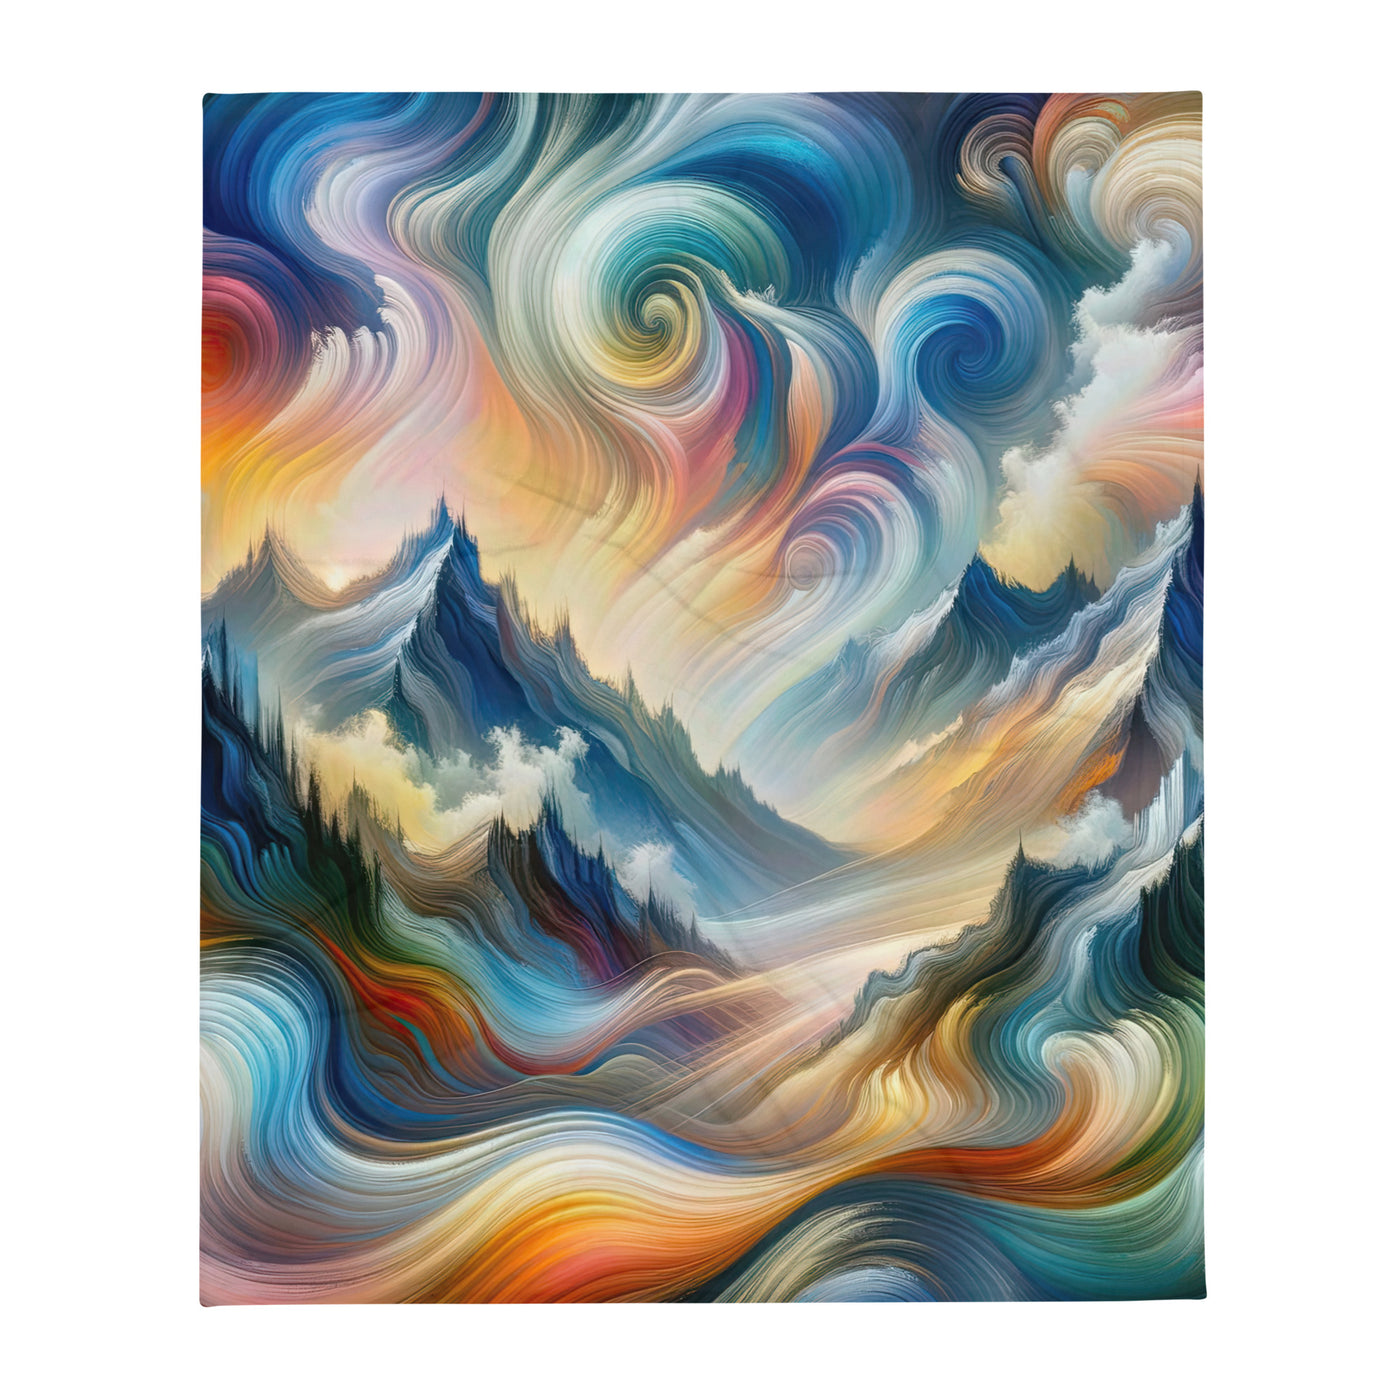 Ätherische schöne Alpen in lebendigen Farbwirbeln - Abstrakte Berge - Überwurfdecke berge xxx yyy zzz 127 x 152.4 cm